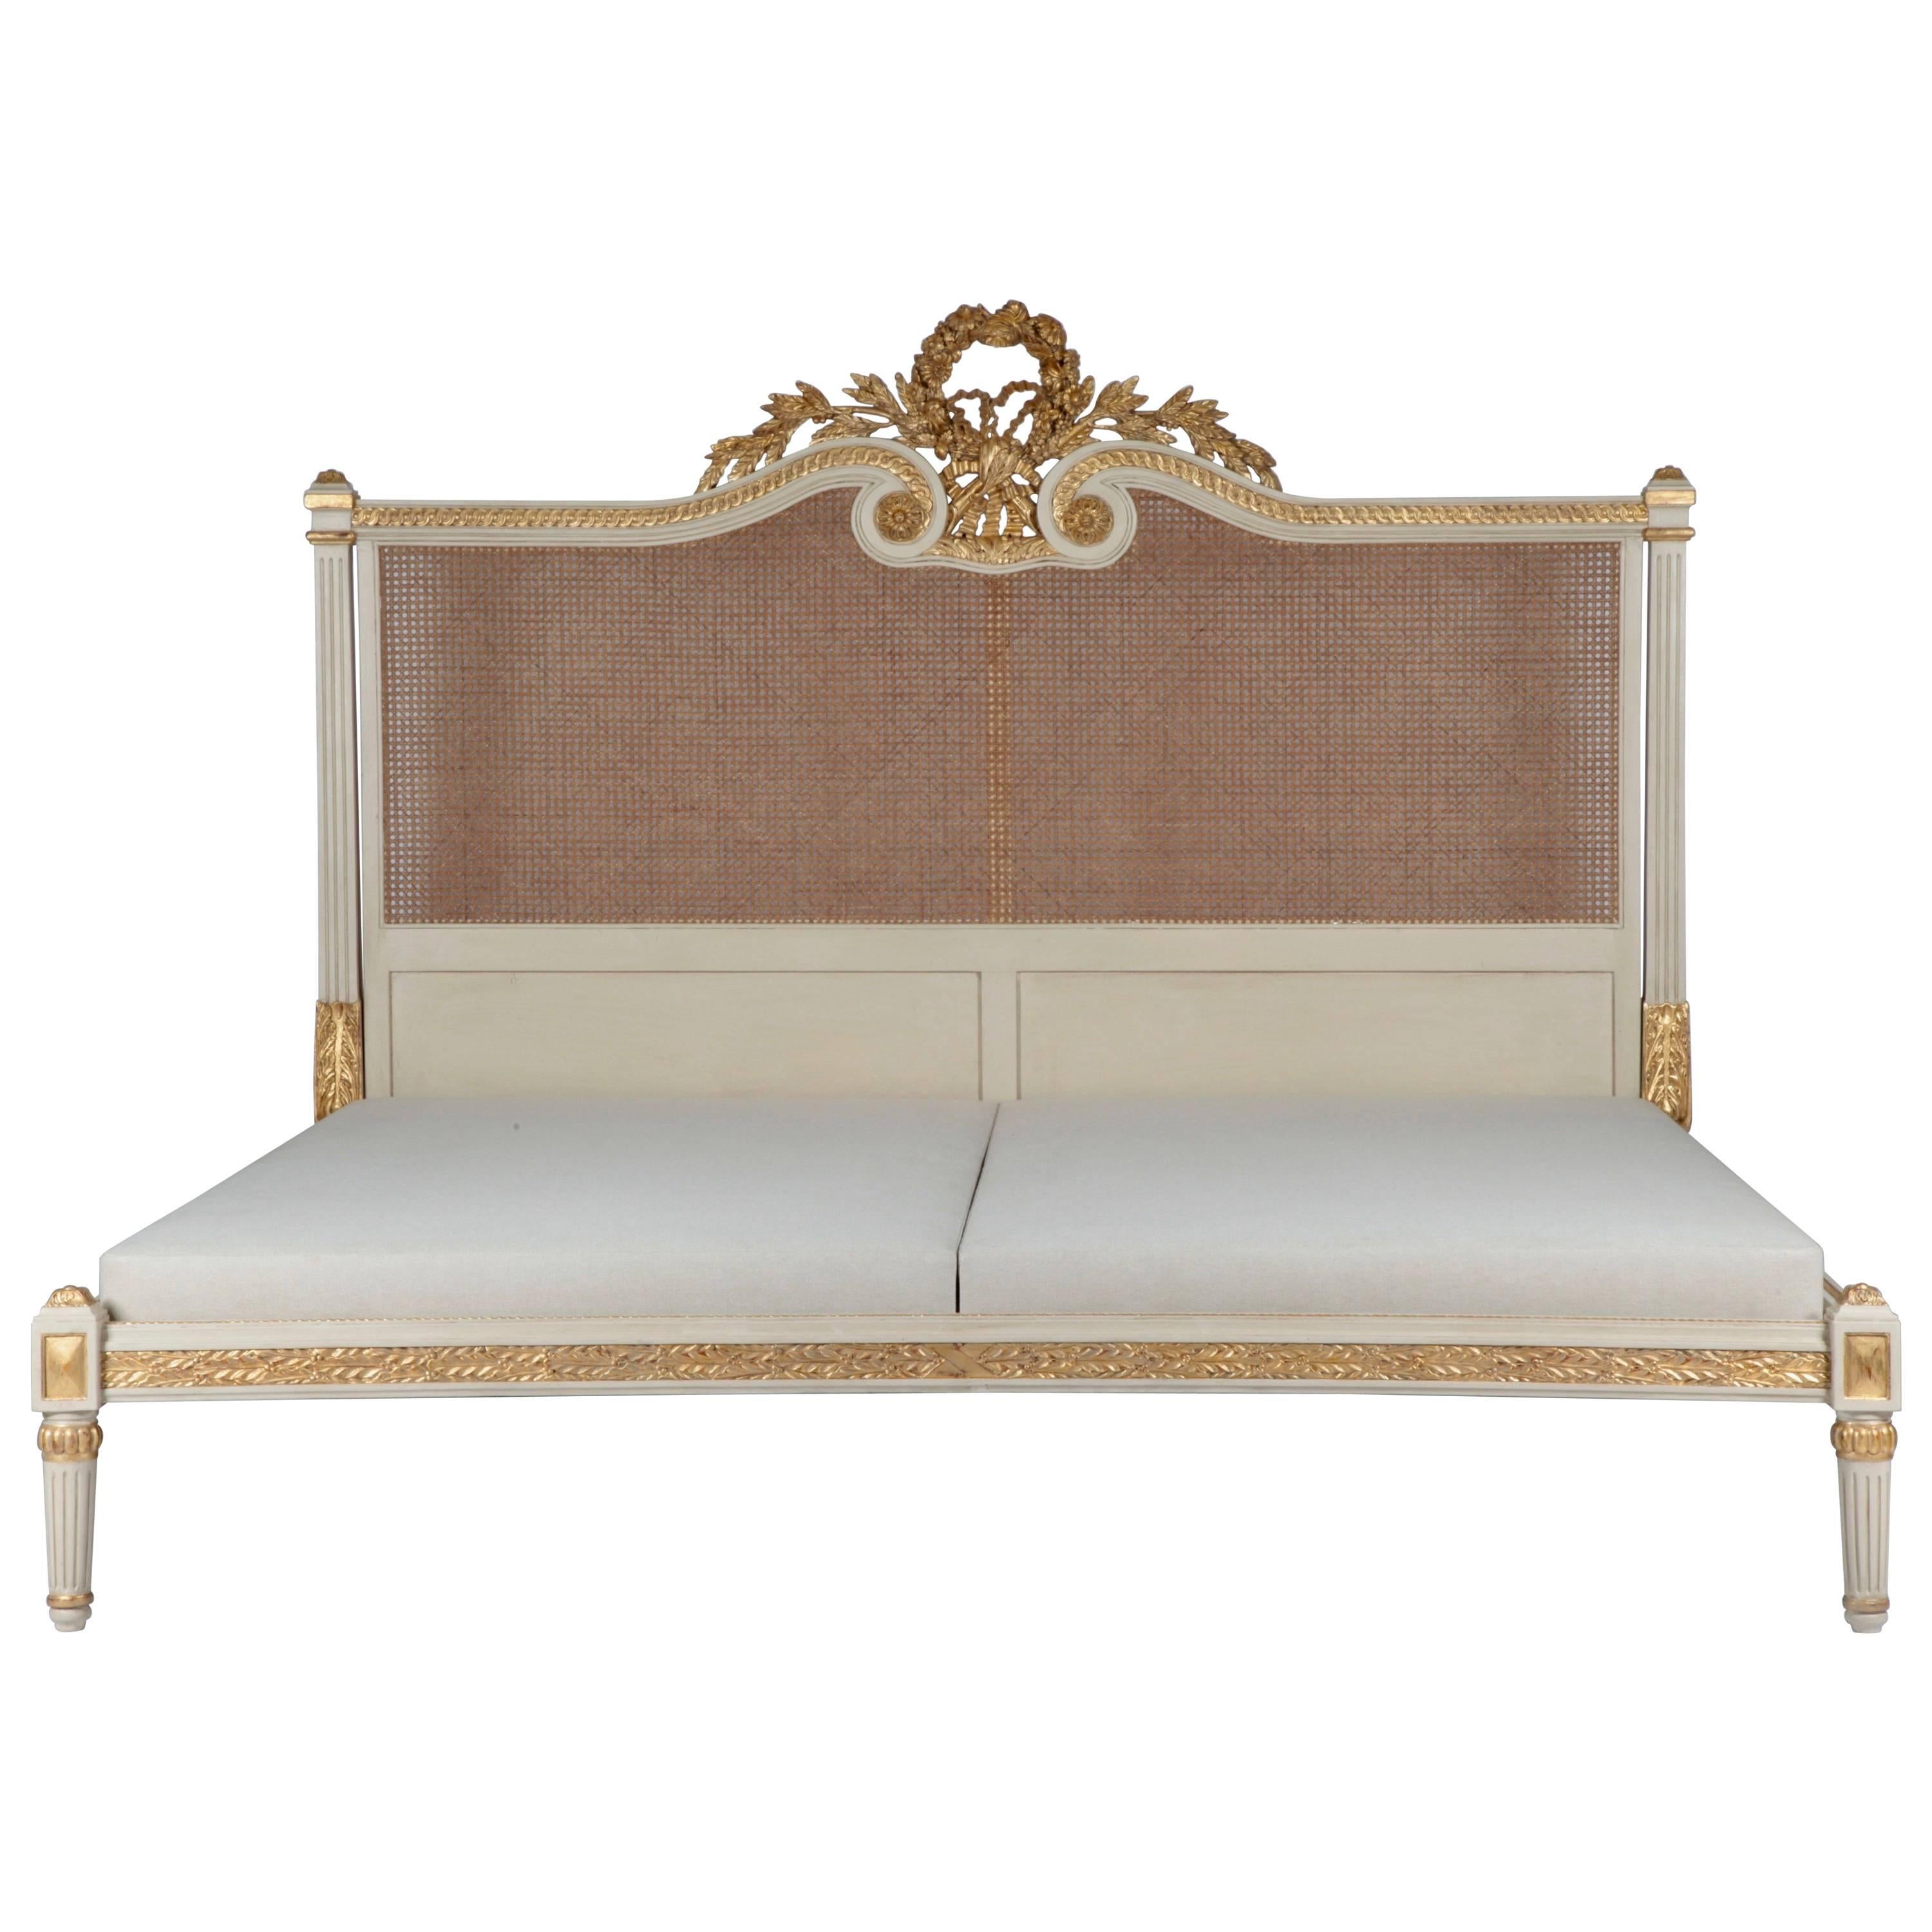 Rosace-Bett im Louis-XVI.-Stil, hergestellt von La Maison London. US King Size Matratze Größe